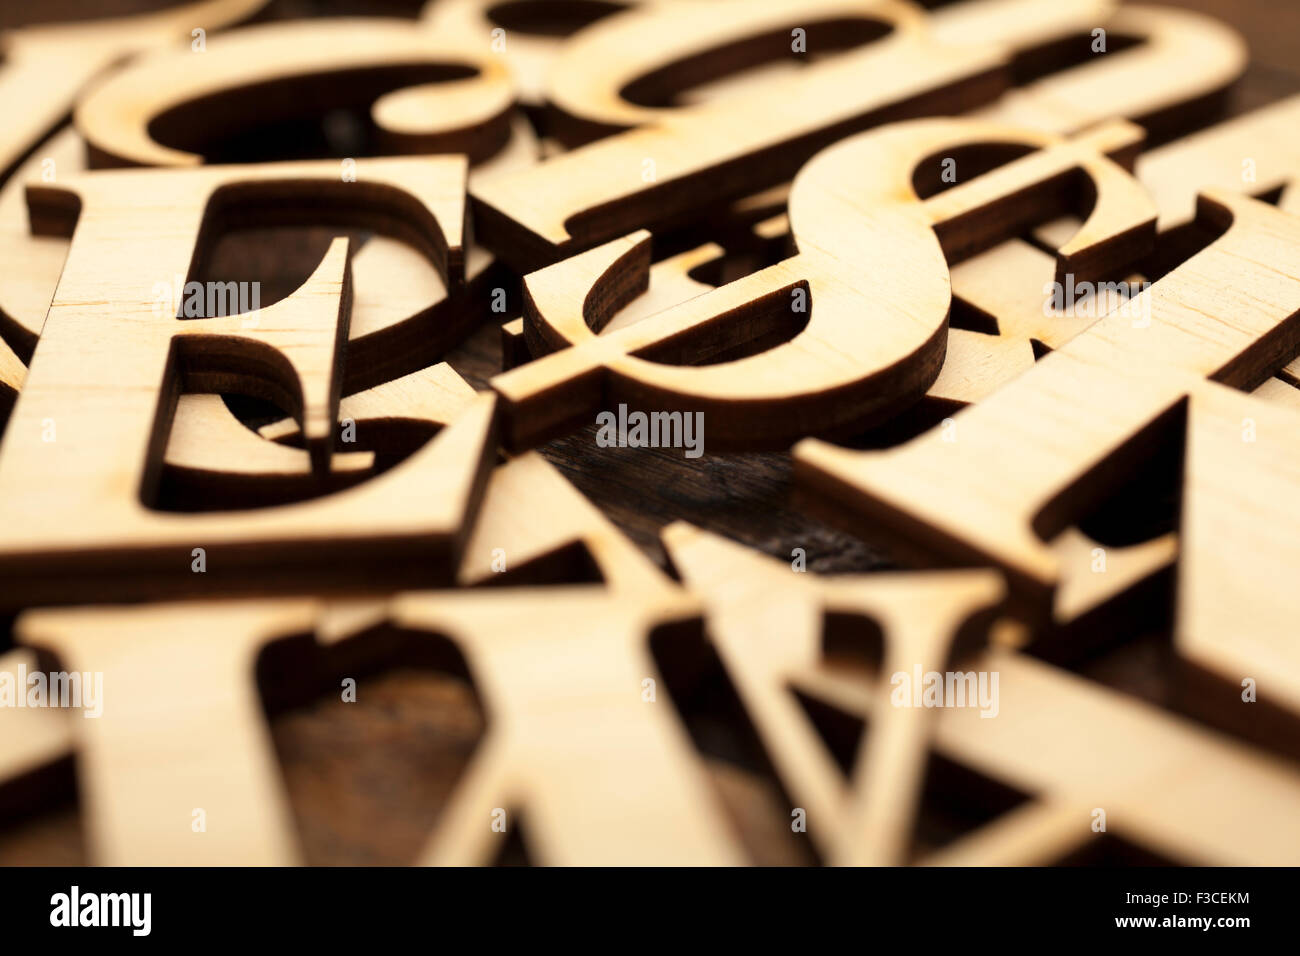 Lettres alphabet en bois sur la surface en bois ancien avec de l'espace pour votre propre texte. Banque D'Images